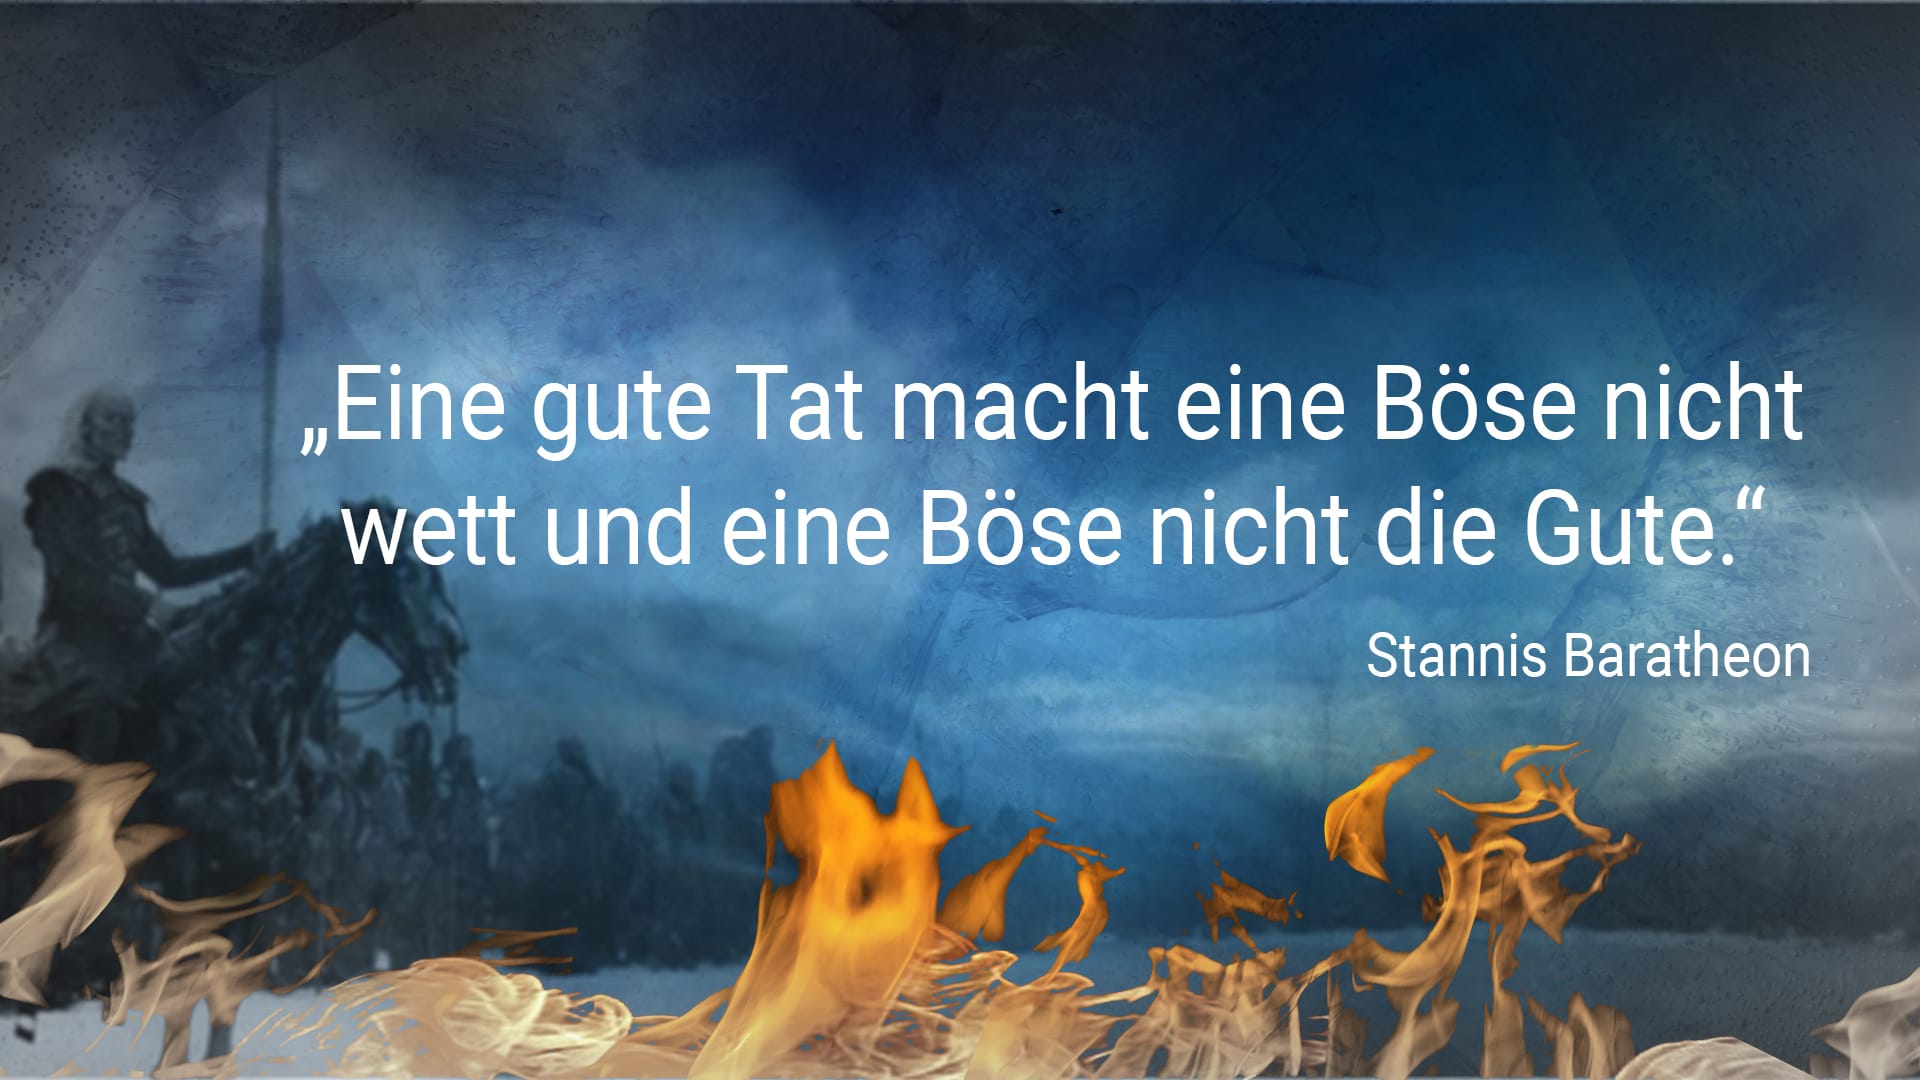 Game of Thrones: "Eine gute Tat macht eine Böse nicht wett und eine Böse nicht die Gute." - Stannis Baratheon